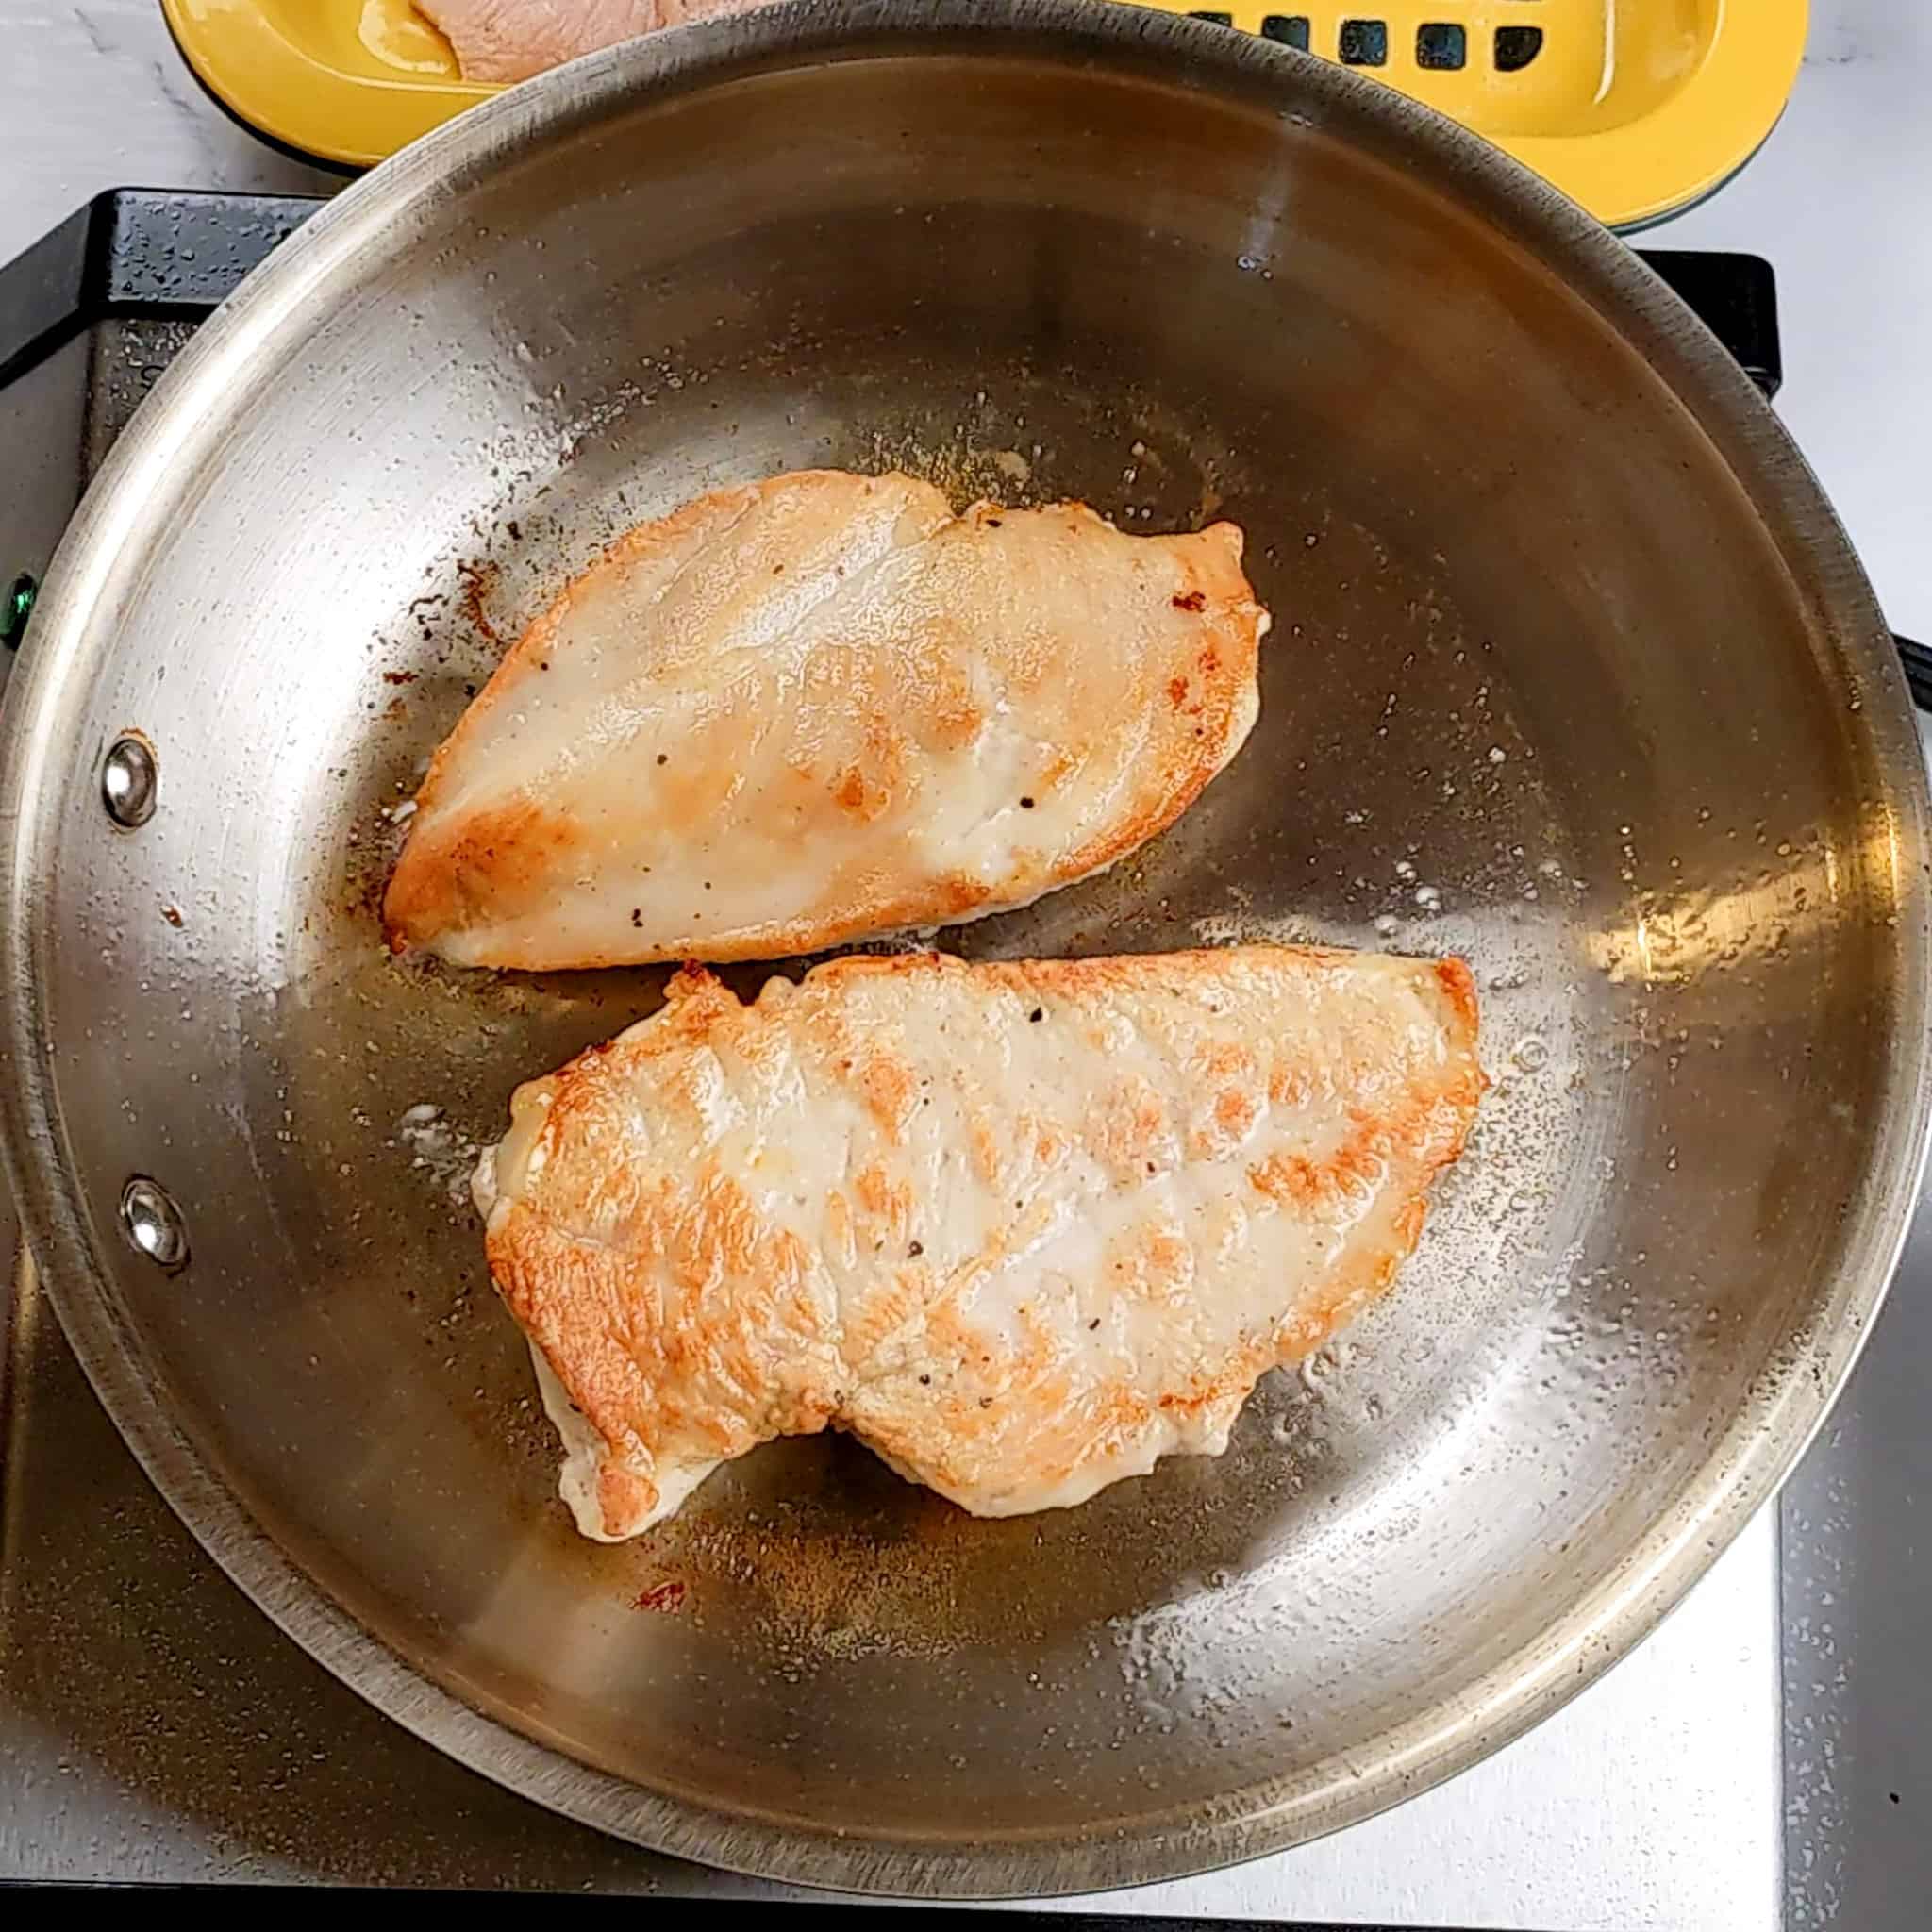 pan seared butterflied chicken in oil in an all-clad frying pan